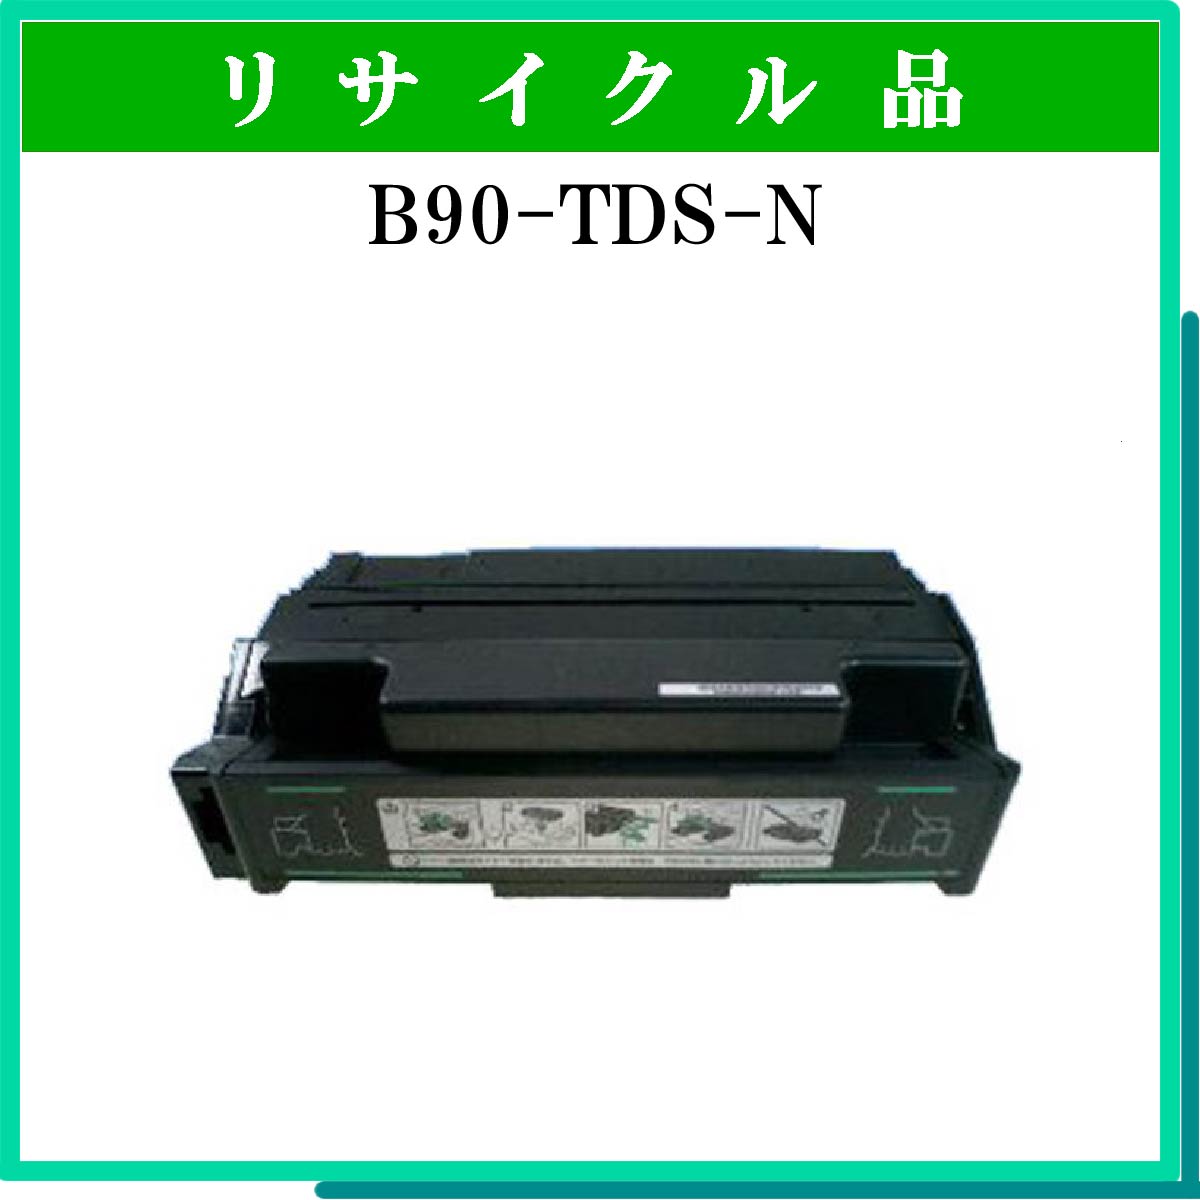 B90-TDS-N